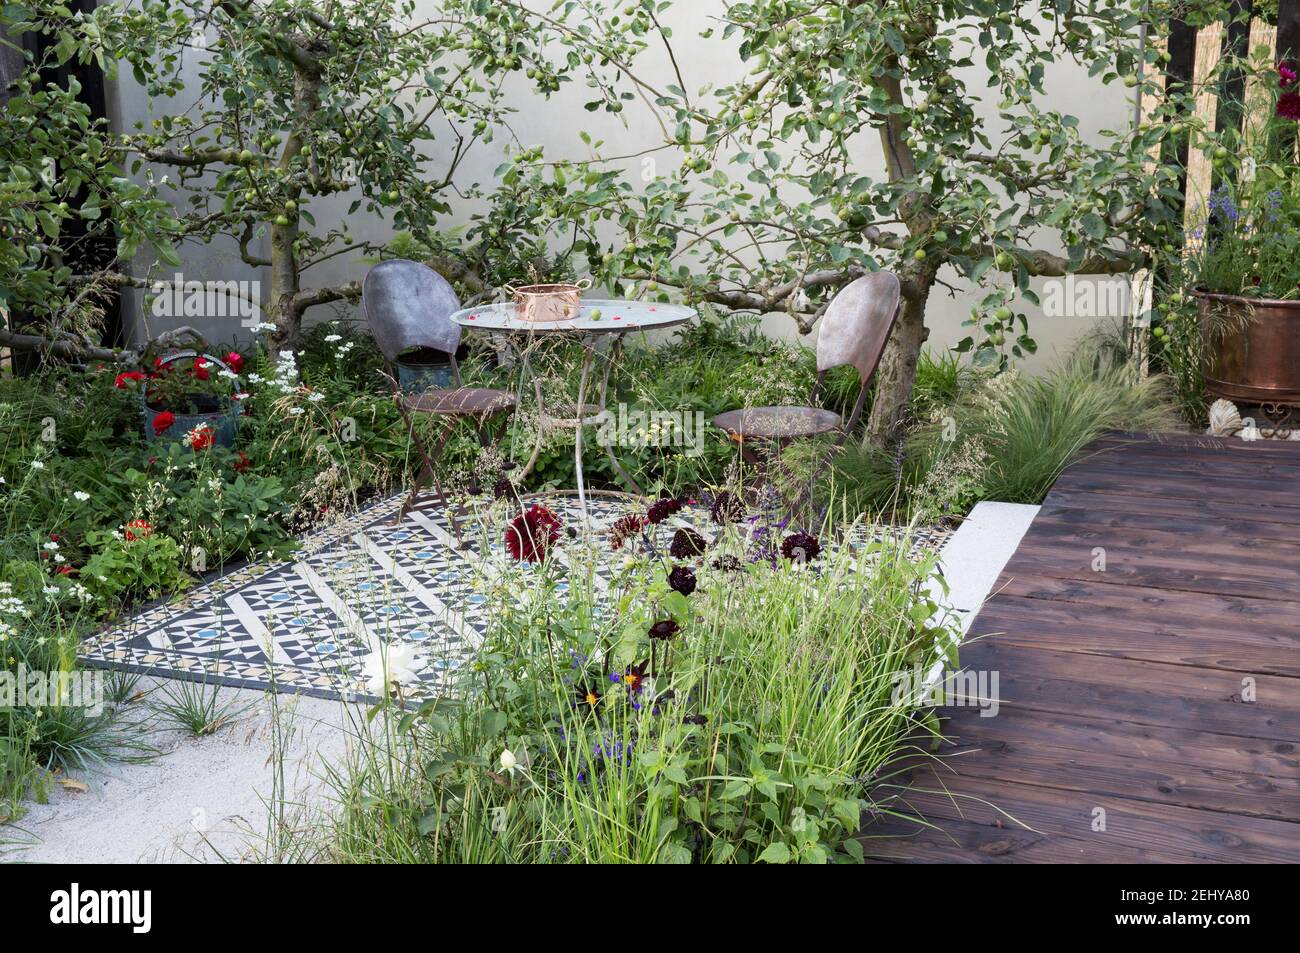 Jardin de la cour Table et chaises sur un patio en mosaïque carrelée avec des pommiers sur un jardin mur rendu terrasse en bois terrasse en été Angleterre Royaume-Uni Banque D'Images